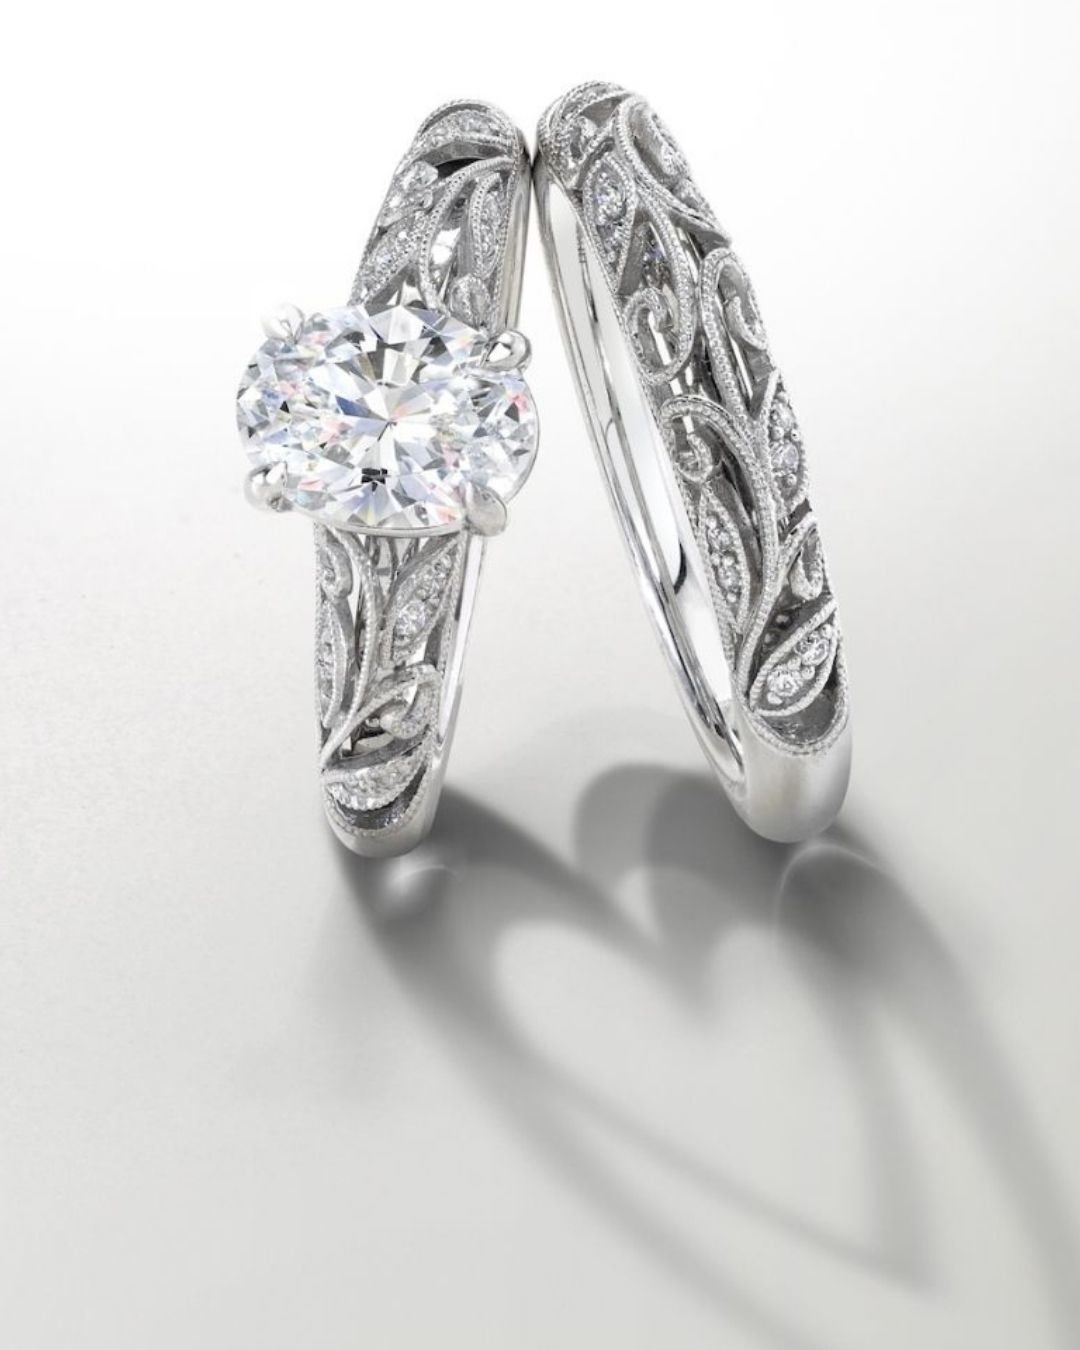 diamond wedding rings in vintage style2